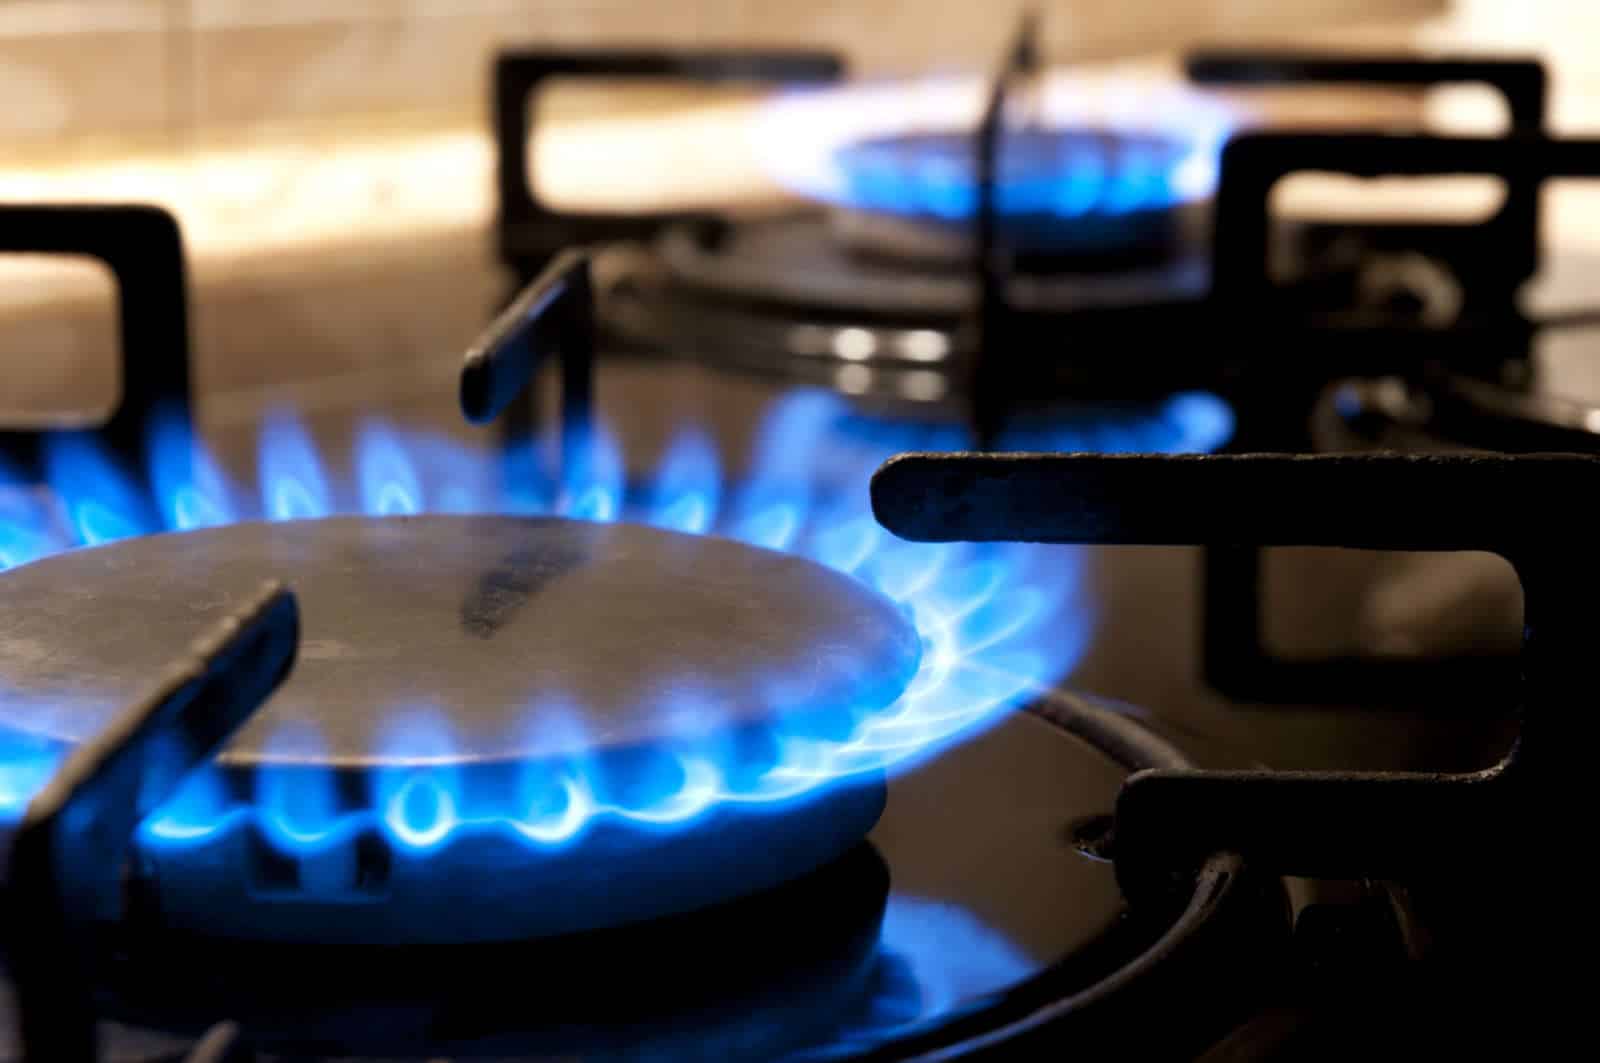 gas stoves cause carbon monoxide